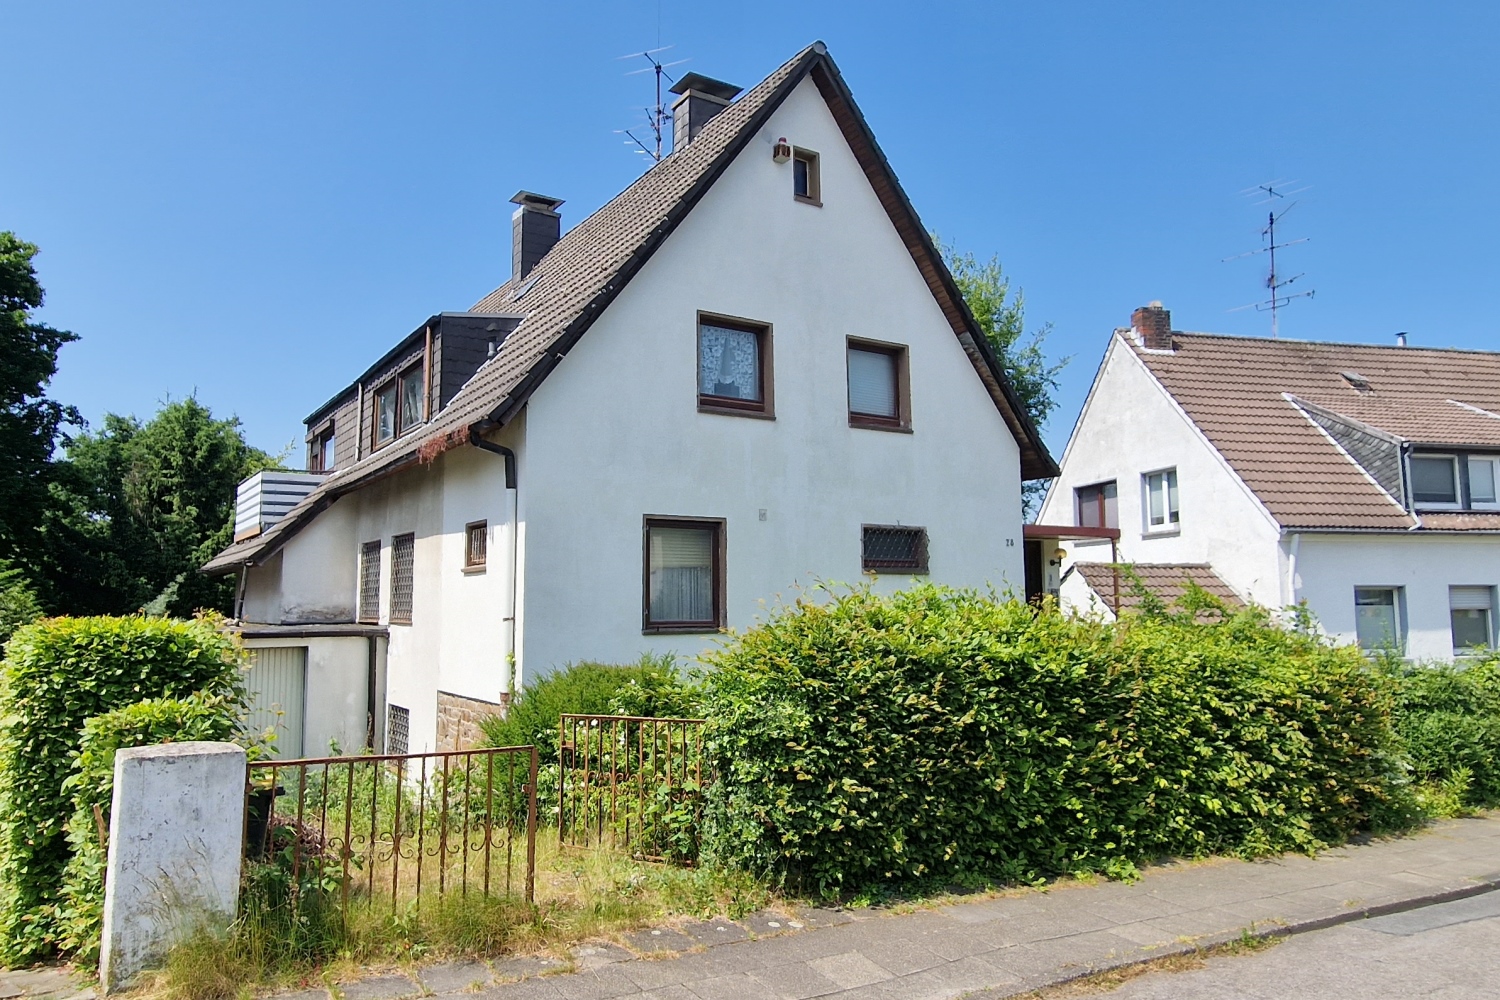 Stark renovierungsbedürftiges Einfamilienhaus in Essen-Haarzopf